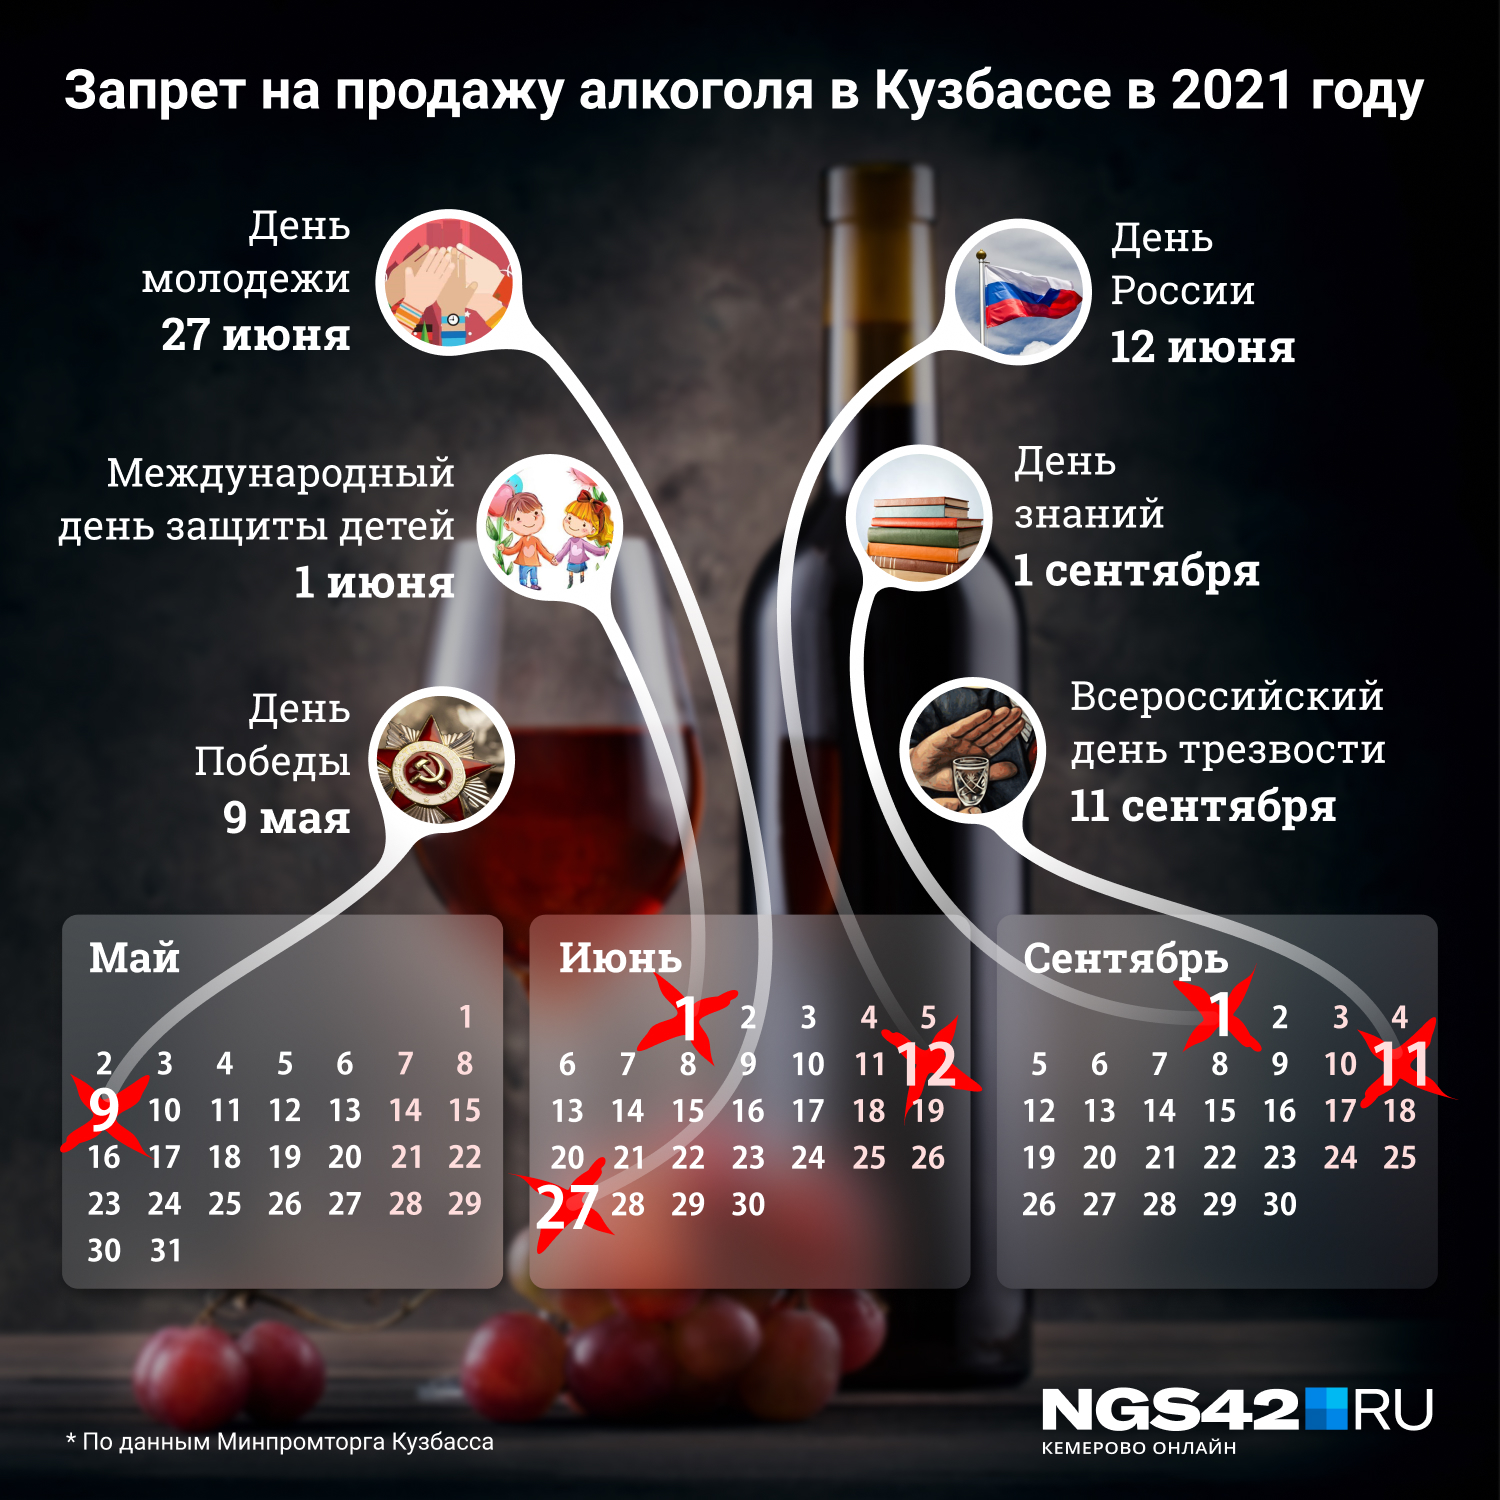 Даты, когда в Кузбассе запрещена продажа алкоголя <nobr>в 2021 году</nobr>